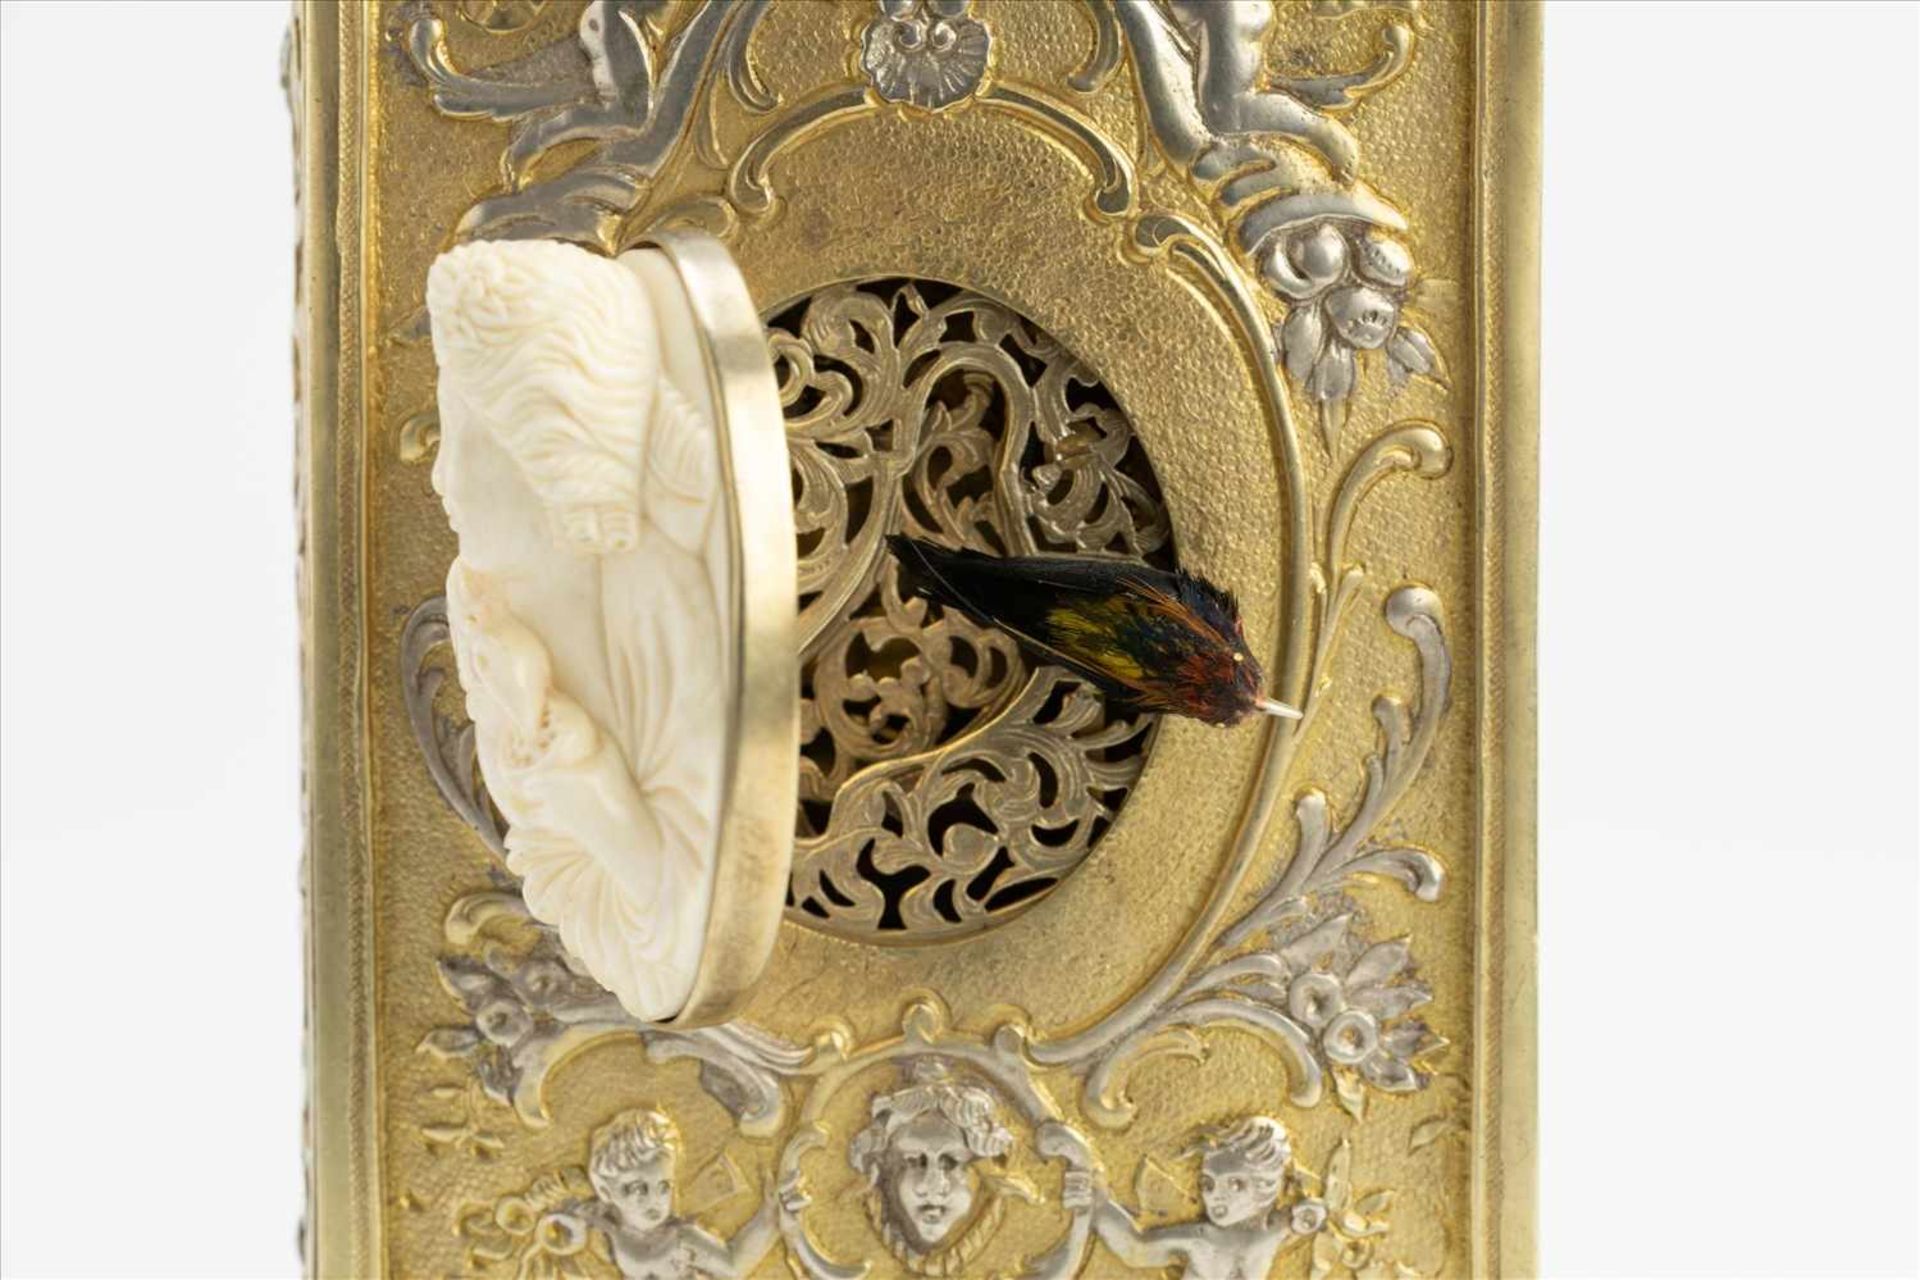 Singvogeldose/ SpieluhrUm 1900, Silber, teilw. vergoldet, Elfenbeinmedaillon, gep.Maße: H6 x B13 x - Bild 15 aus 15